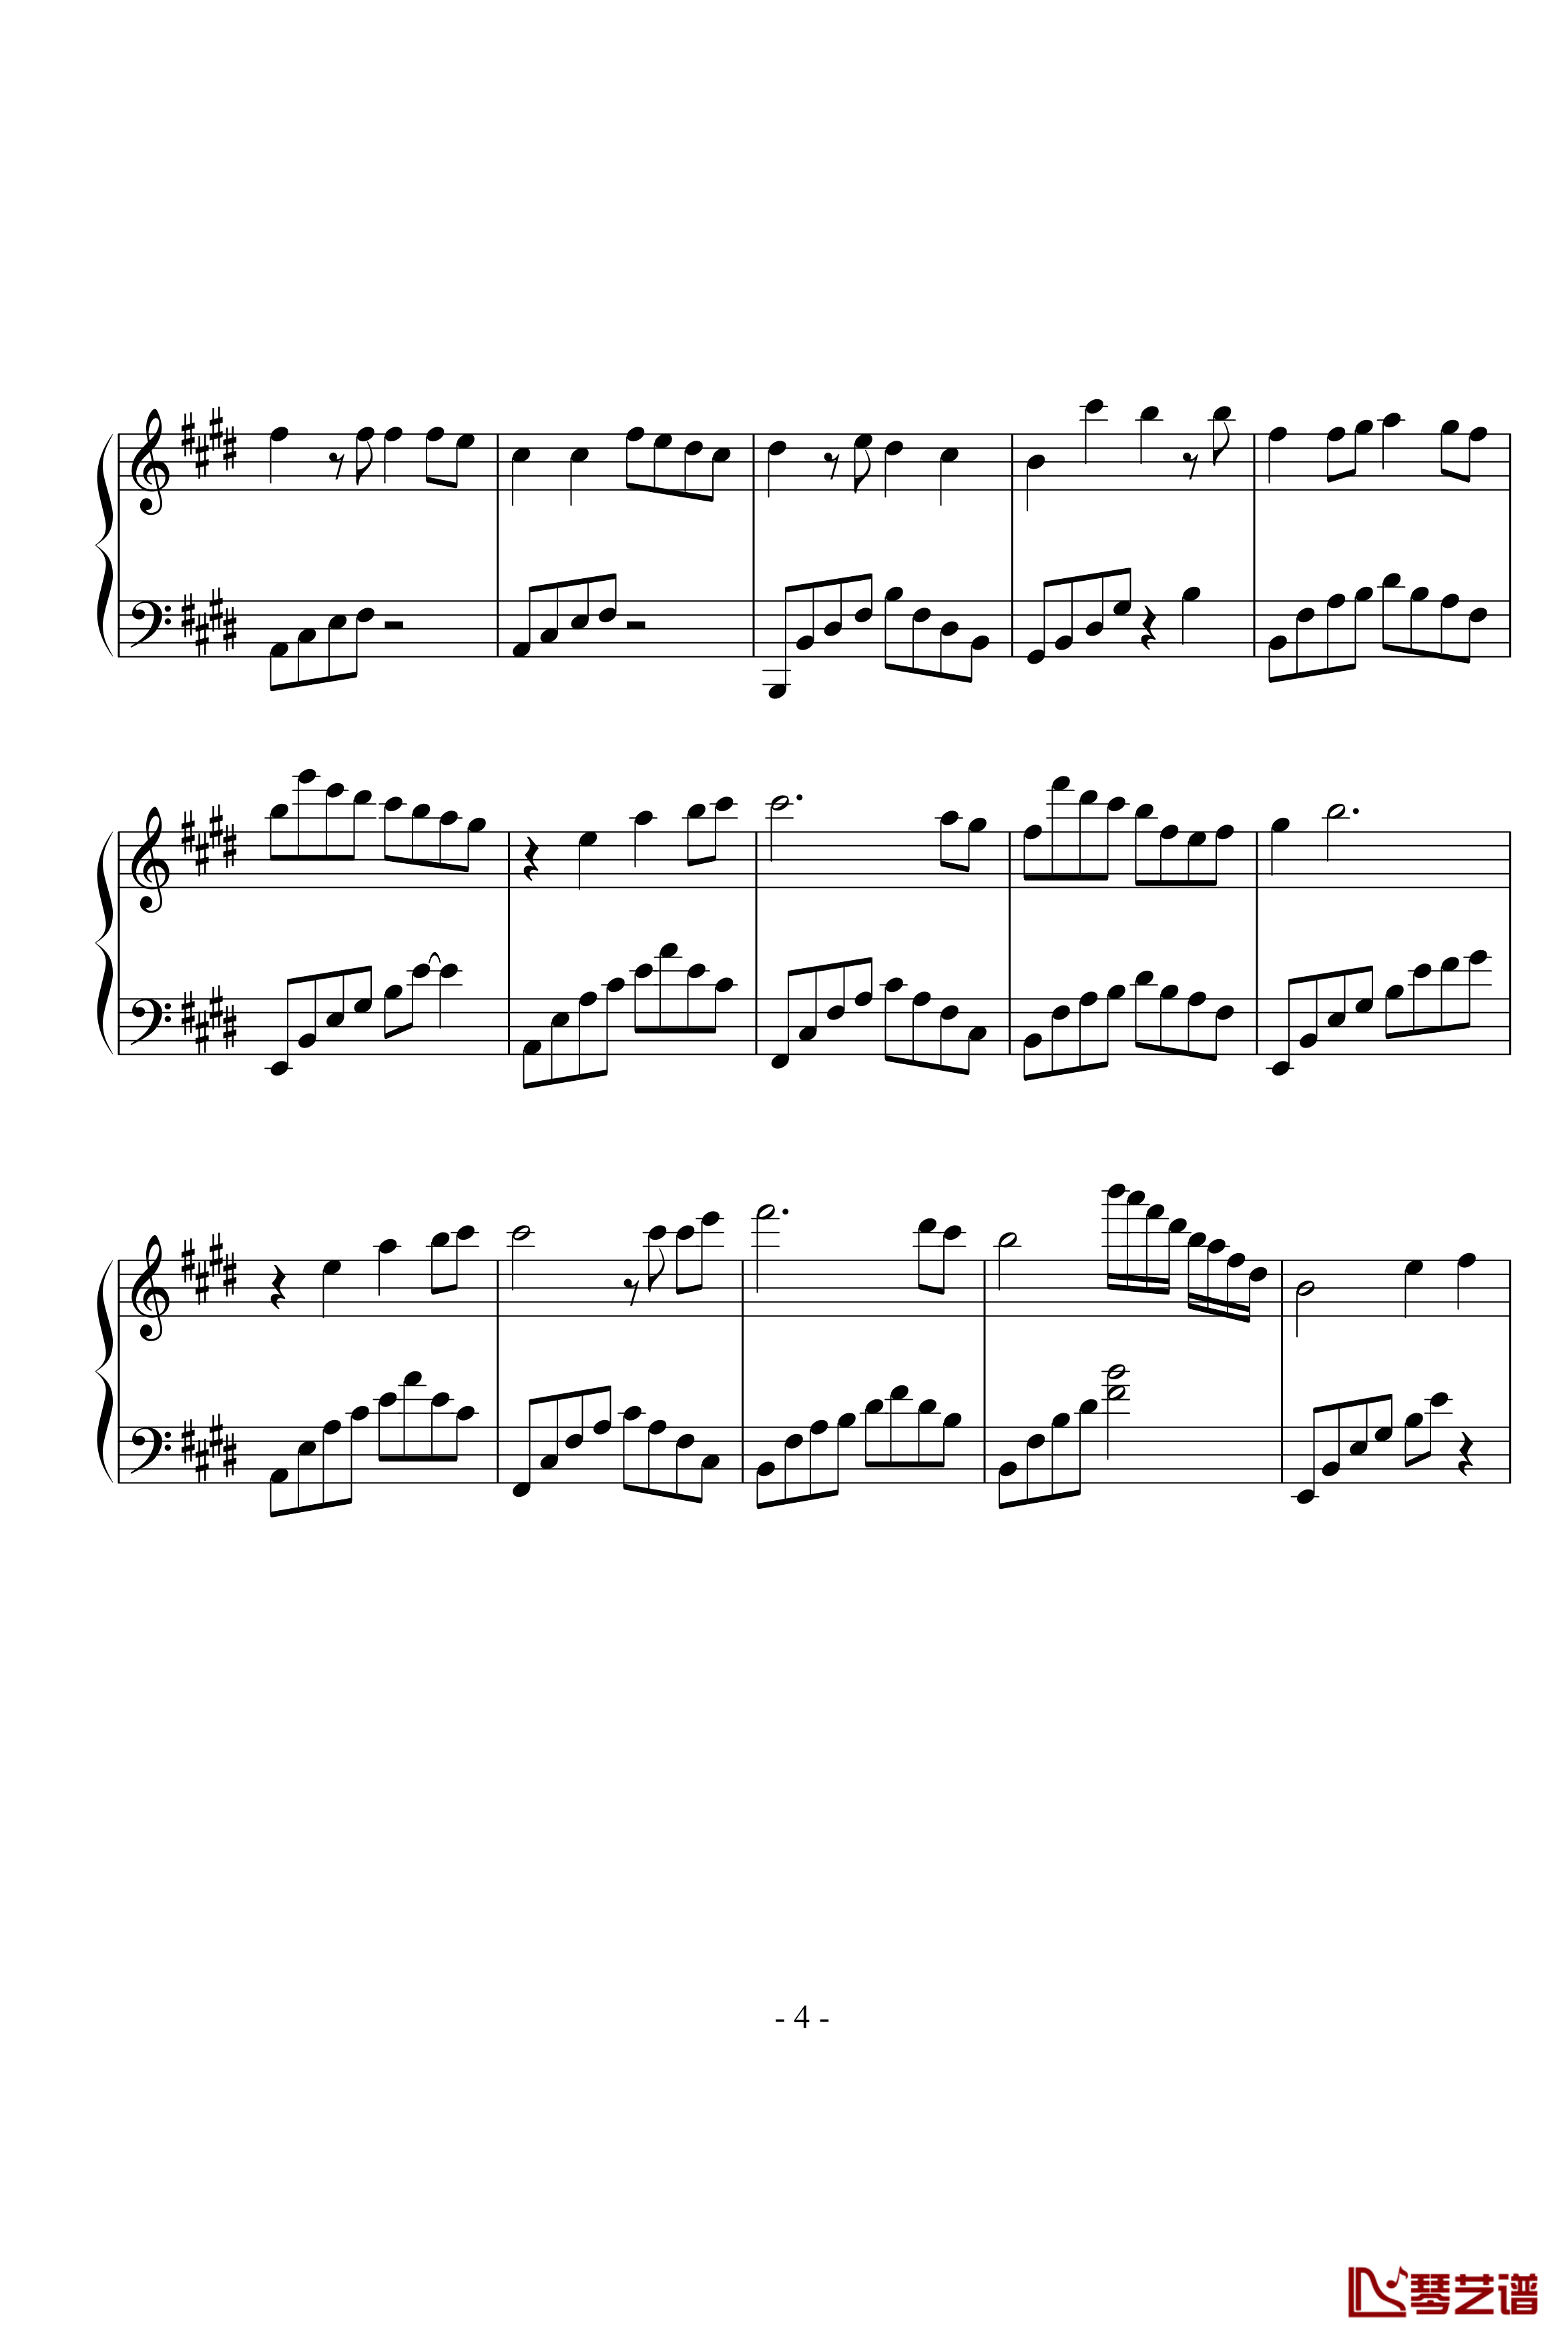 同一首歌钢琴谱-完整版-毛阿敏4